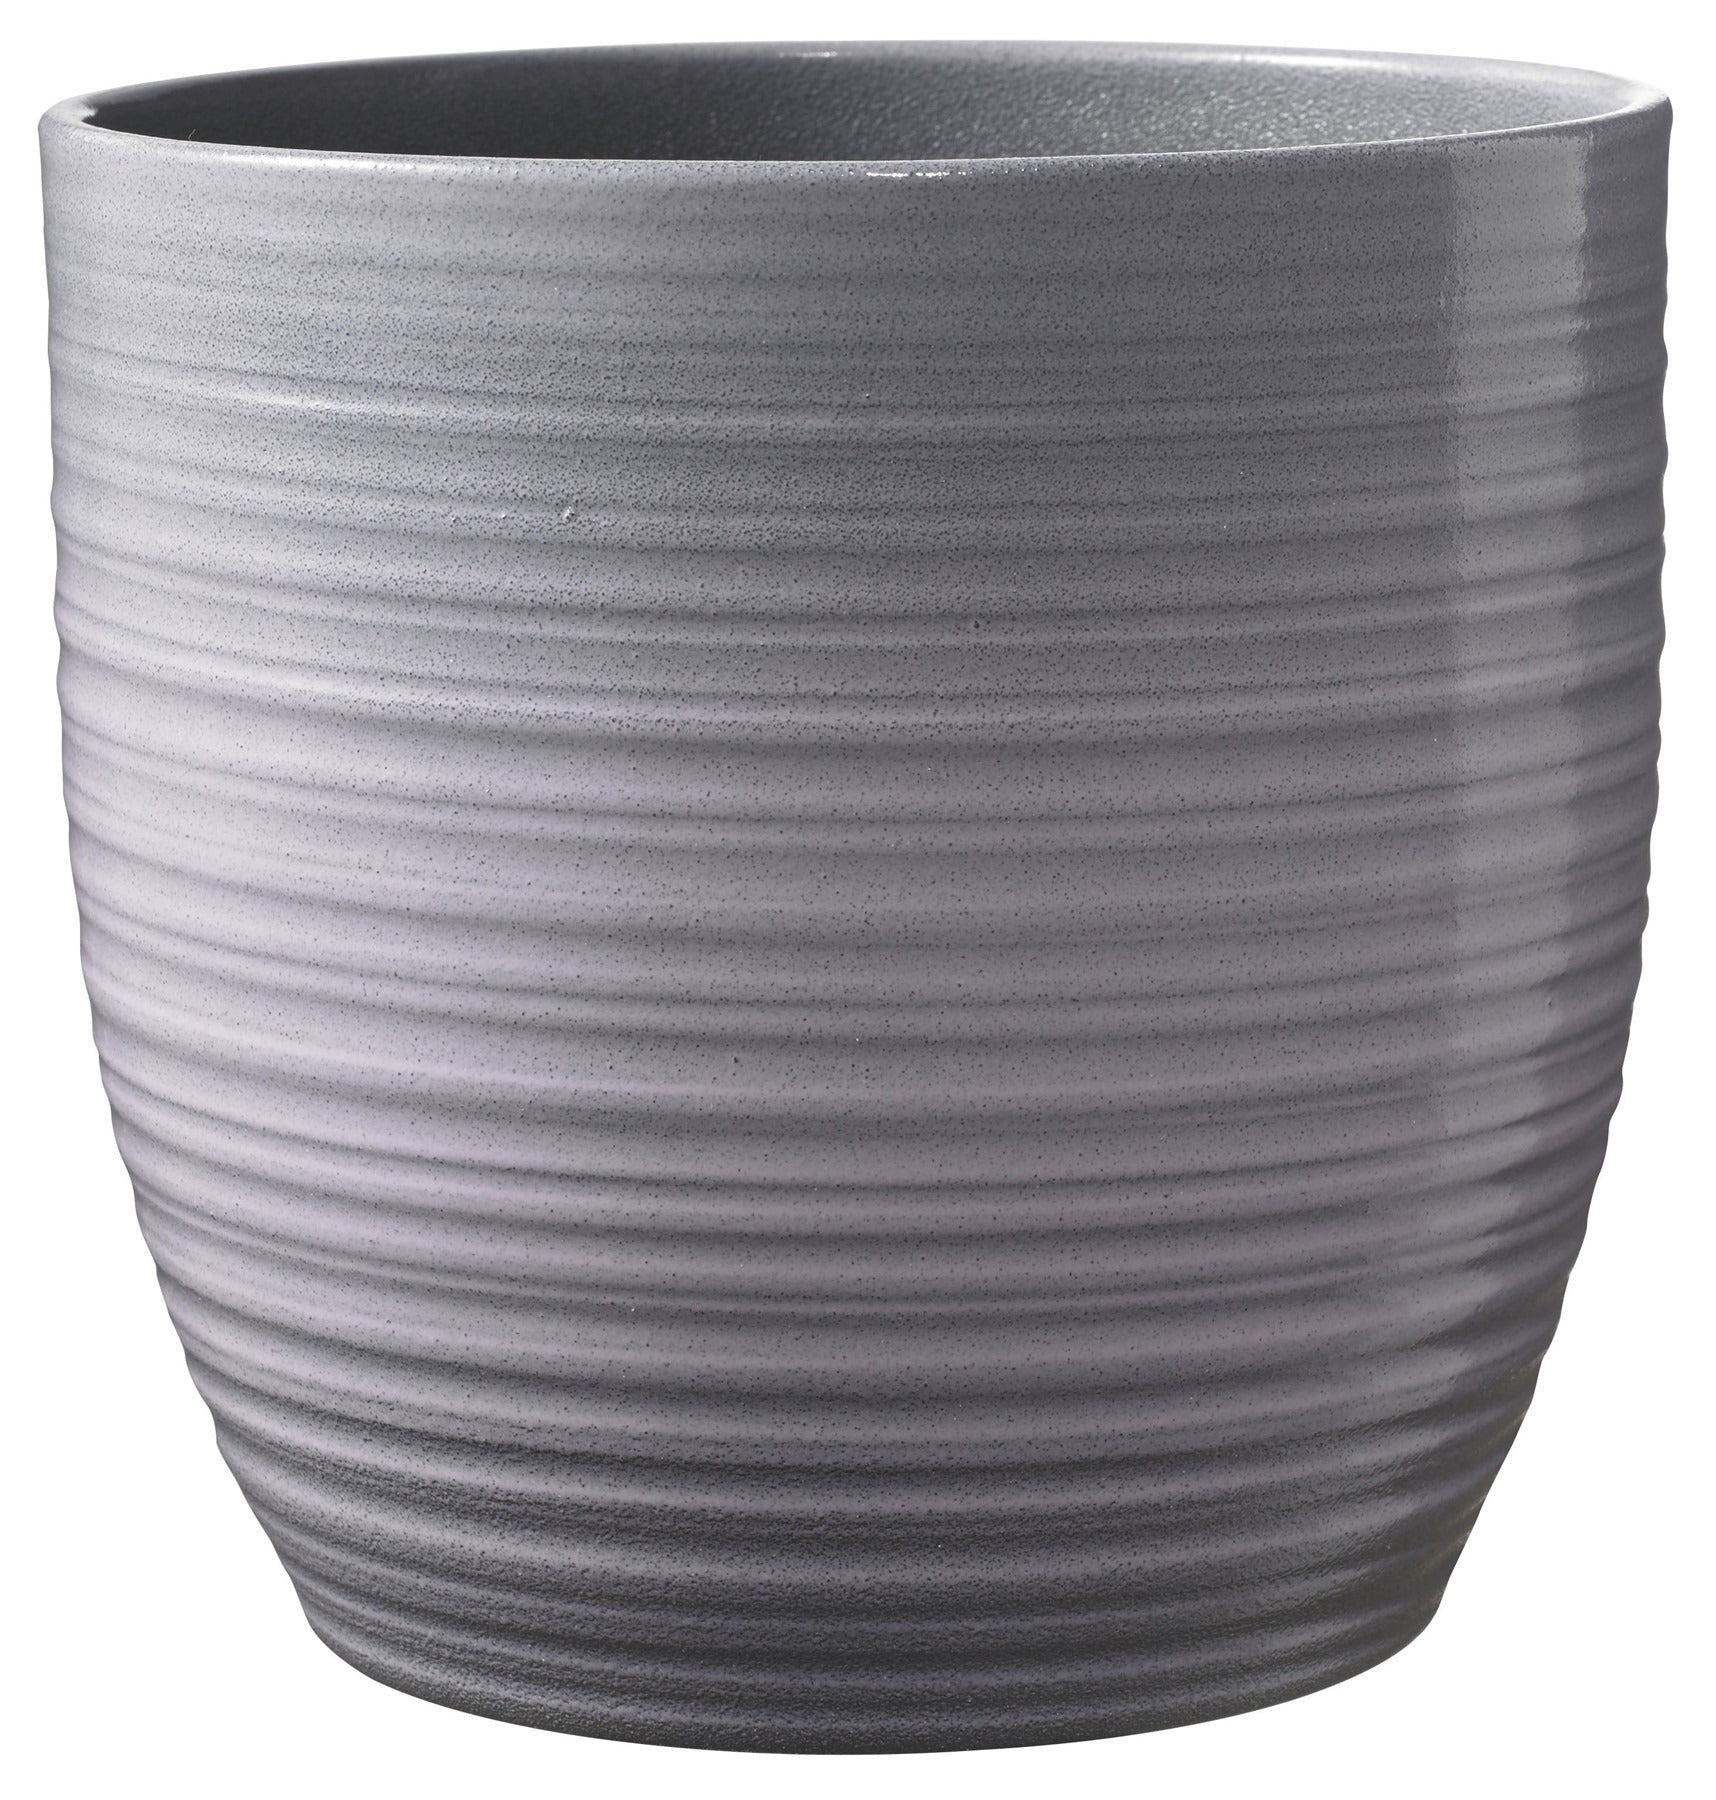 View Bergamo Ceramic Pot Lavender Glaze 19cm information